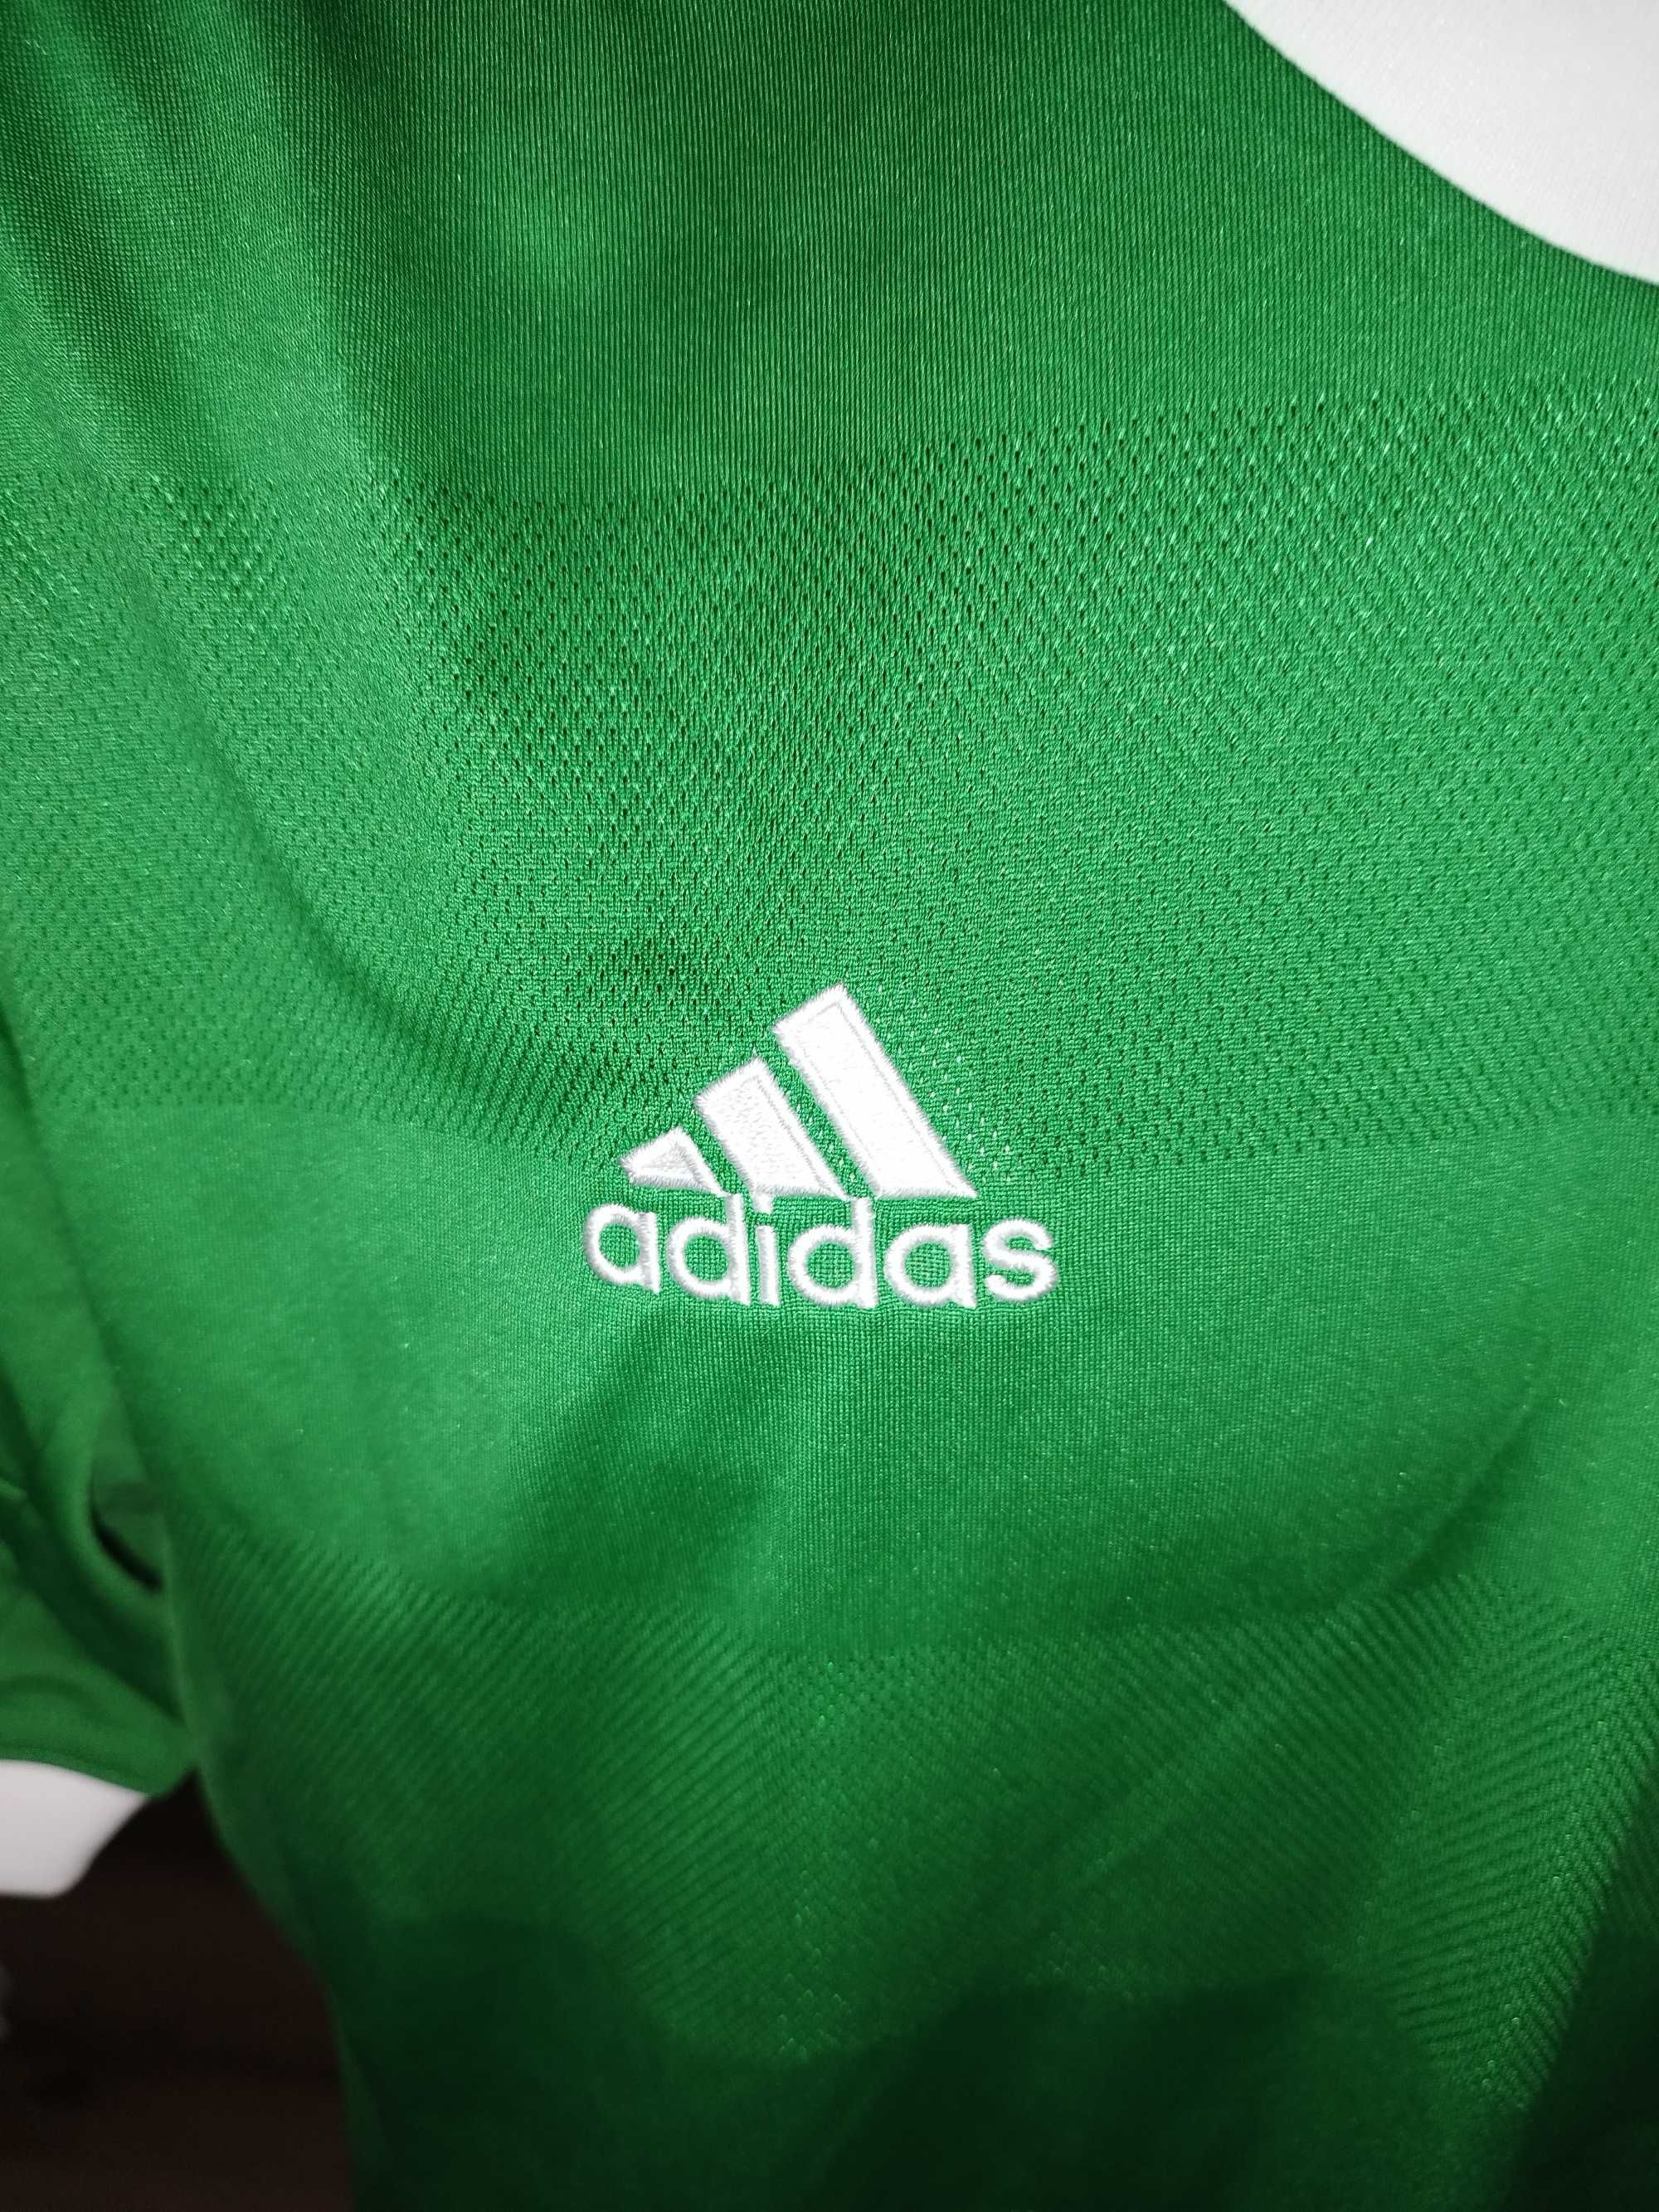 tricou germania mannschaft adidas 2012 aniversar marimea XL